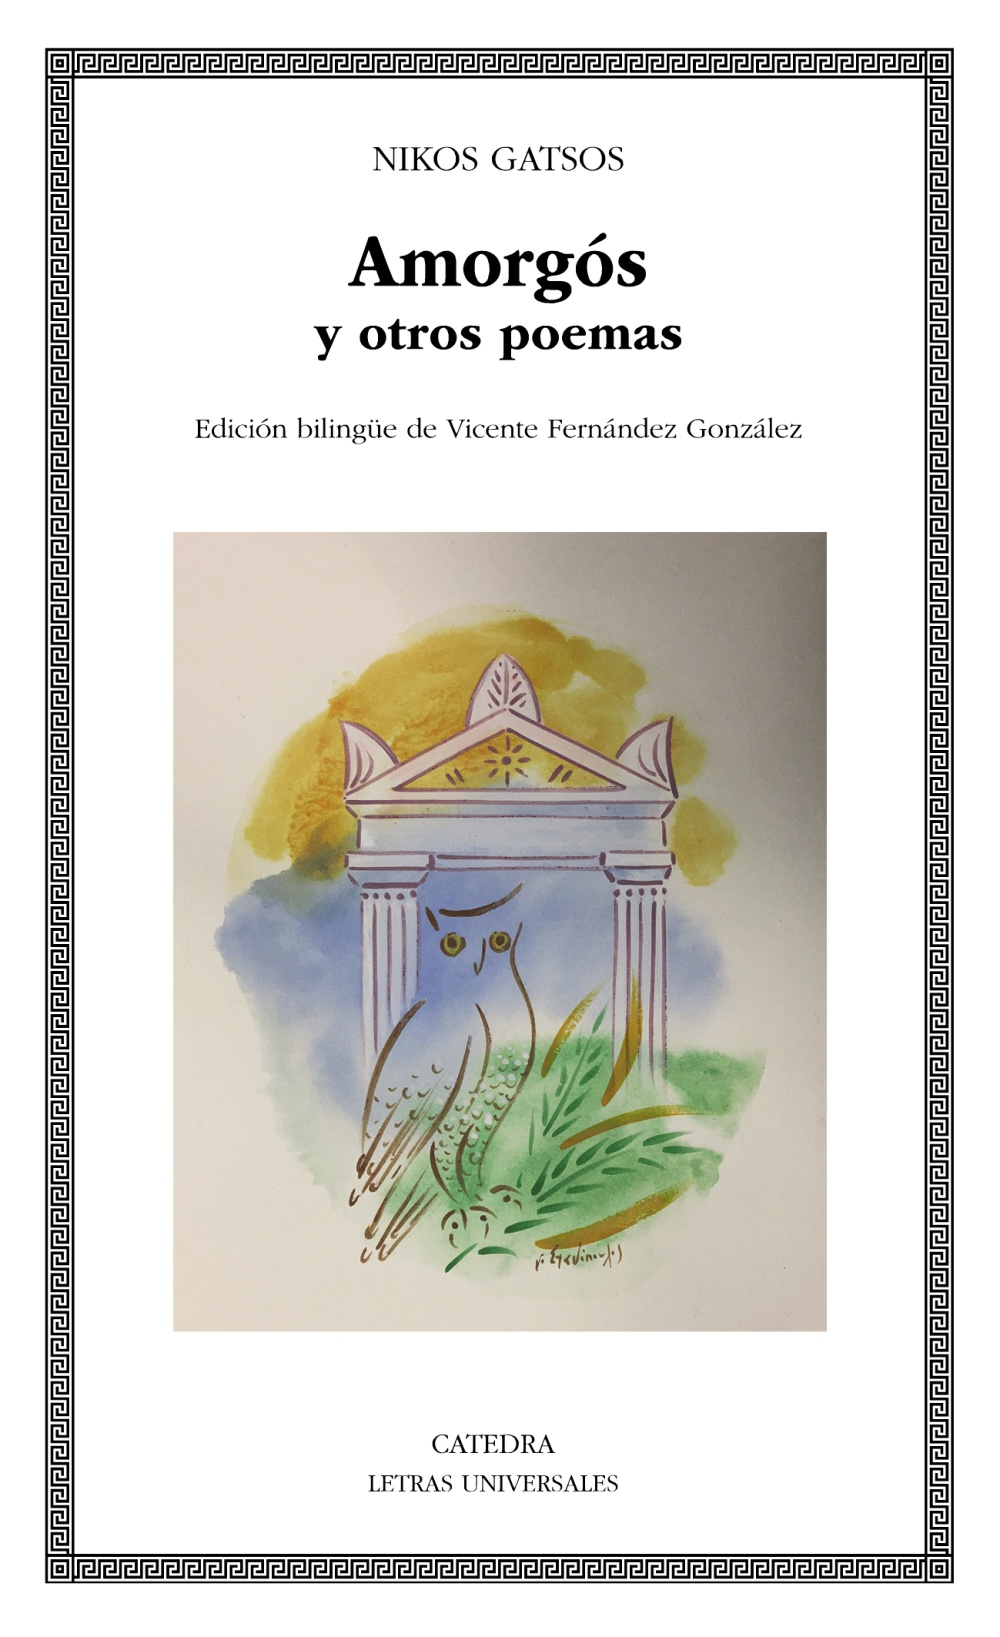 Amorgs y otros poemas, de Nikos Gatsos